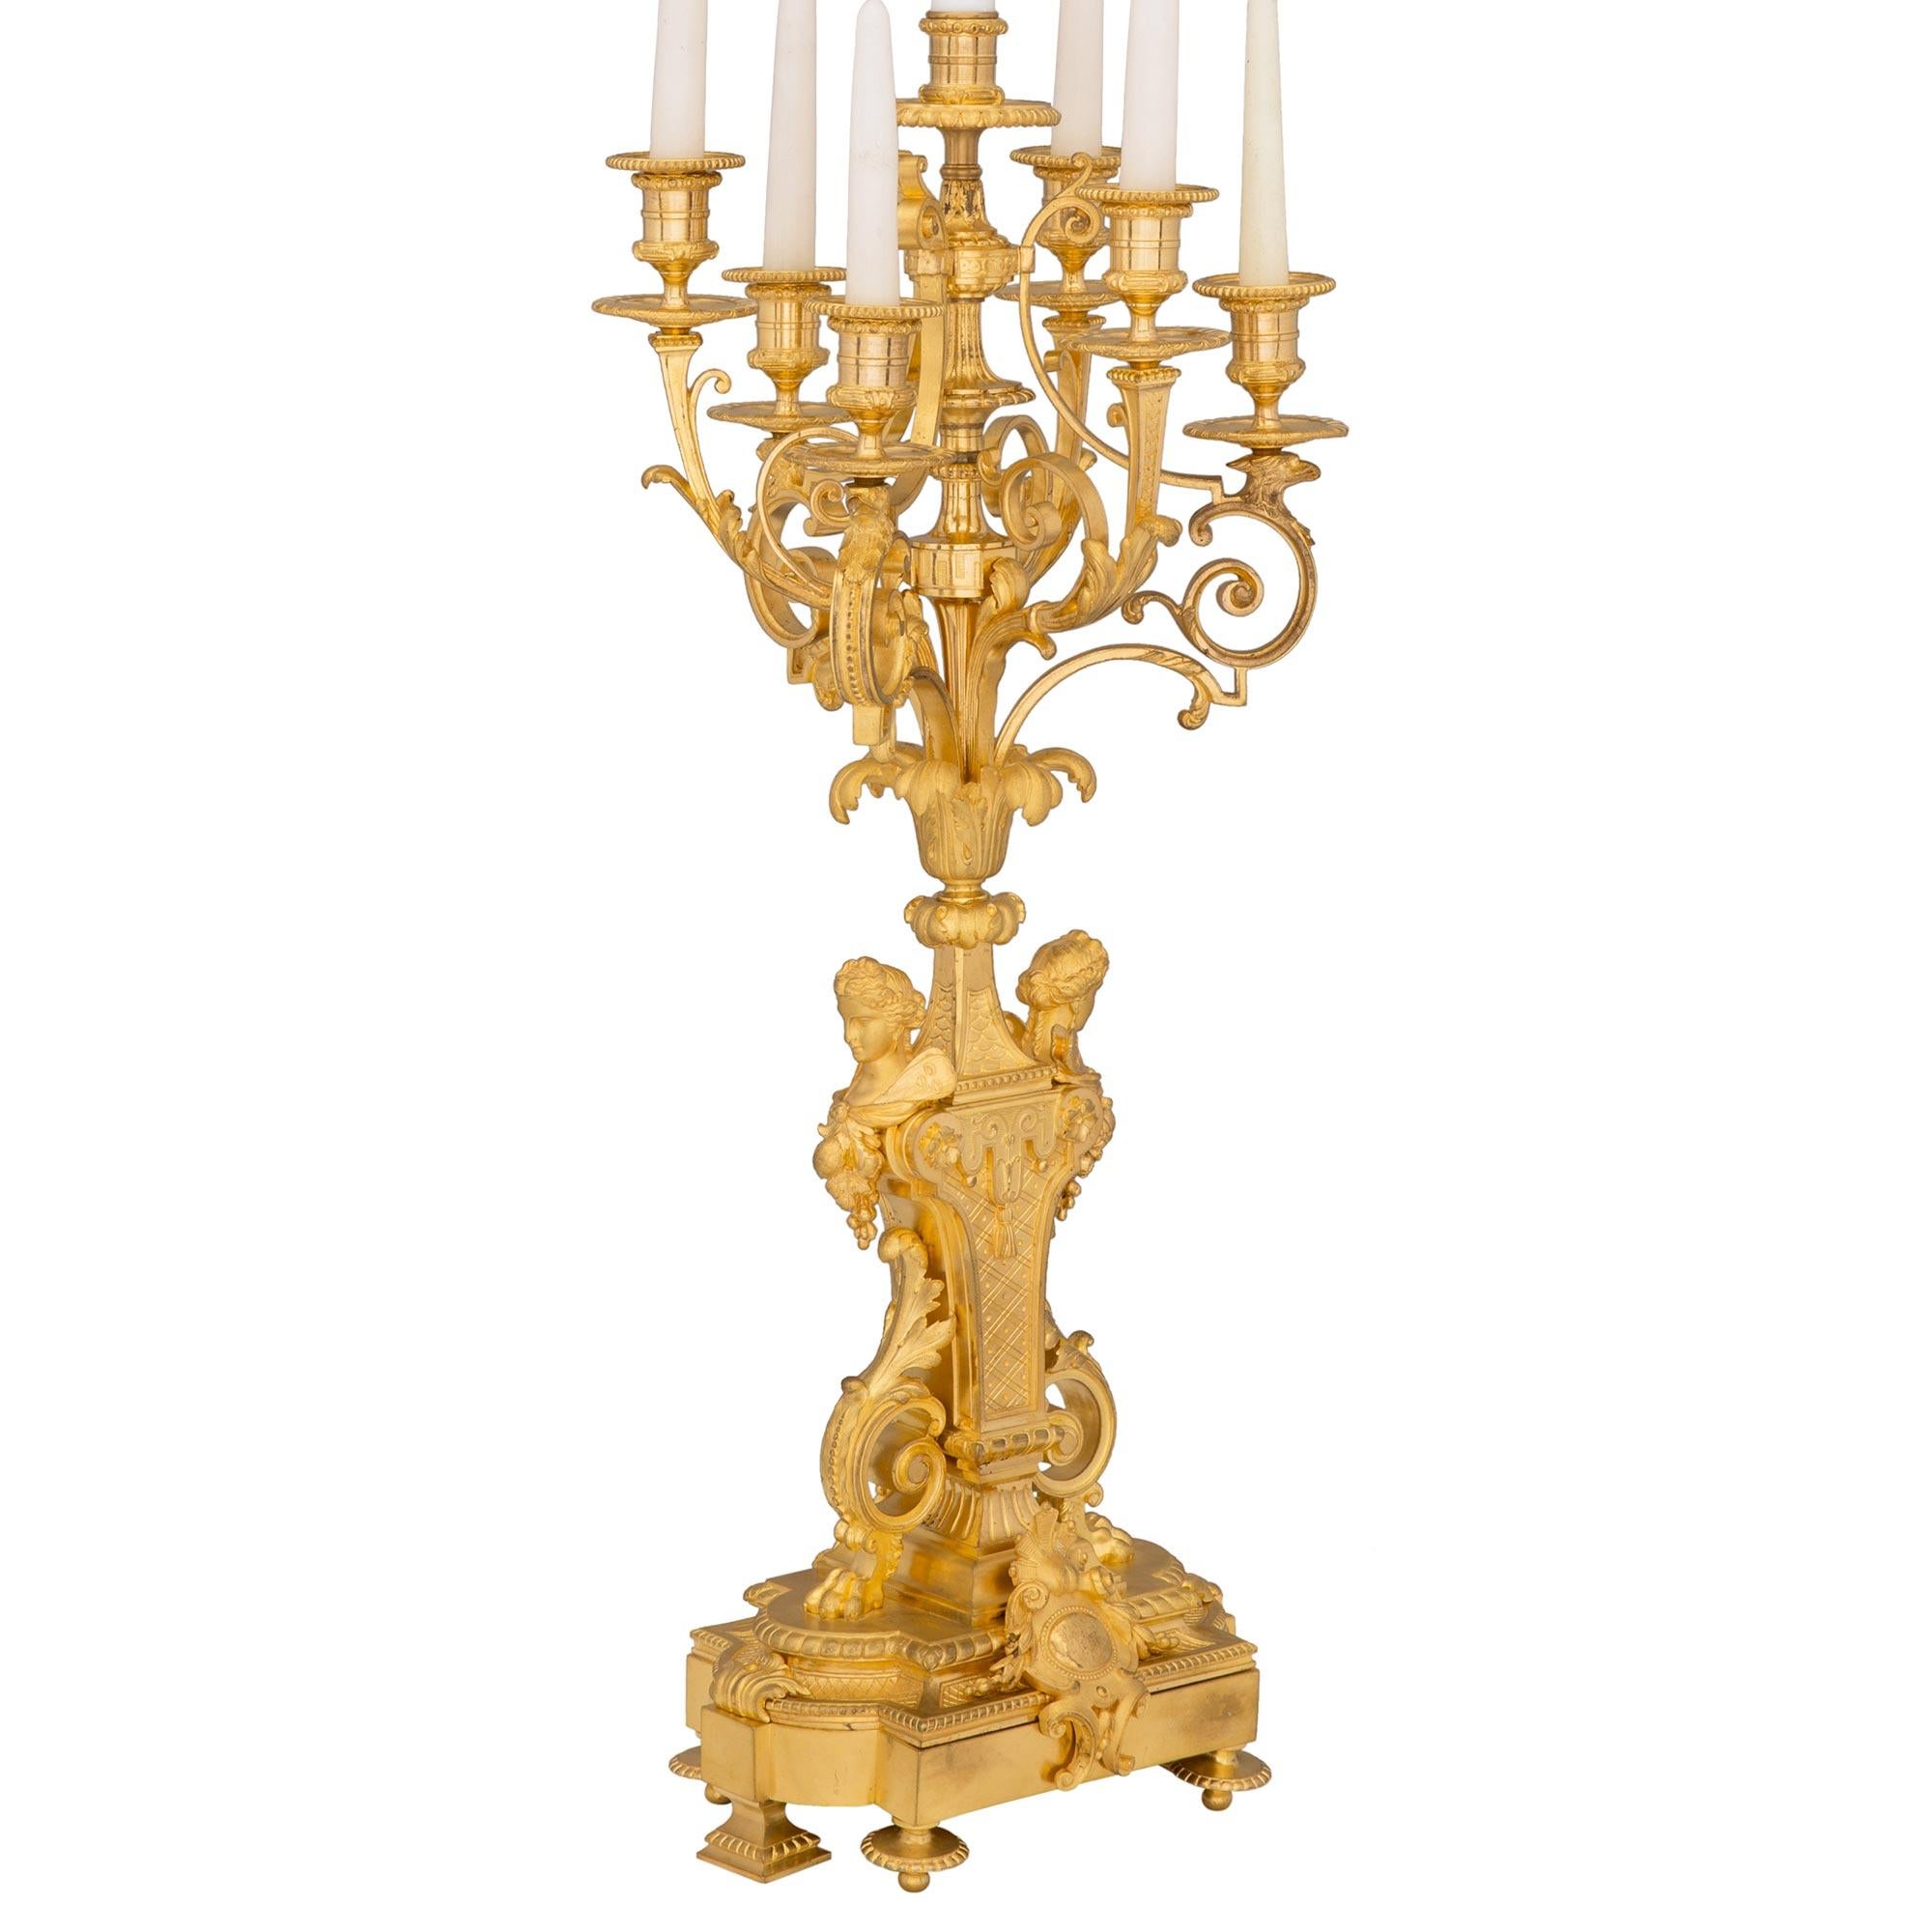 Une paire exceptionnelle et unique de lampes candélabres à six bras en bronze doré de style Louis XVI et d'époque Belle Époque. Chaque lampe est surélevée par d'élégants pieds en forme de topie et des supports coniques carrés sous une bordure